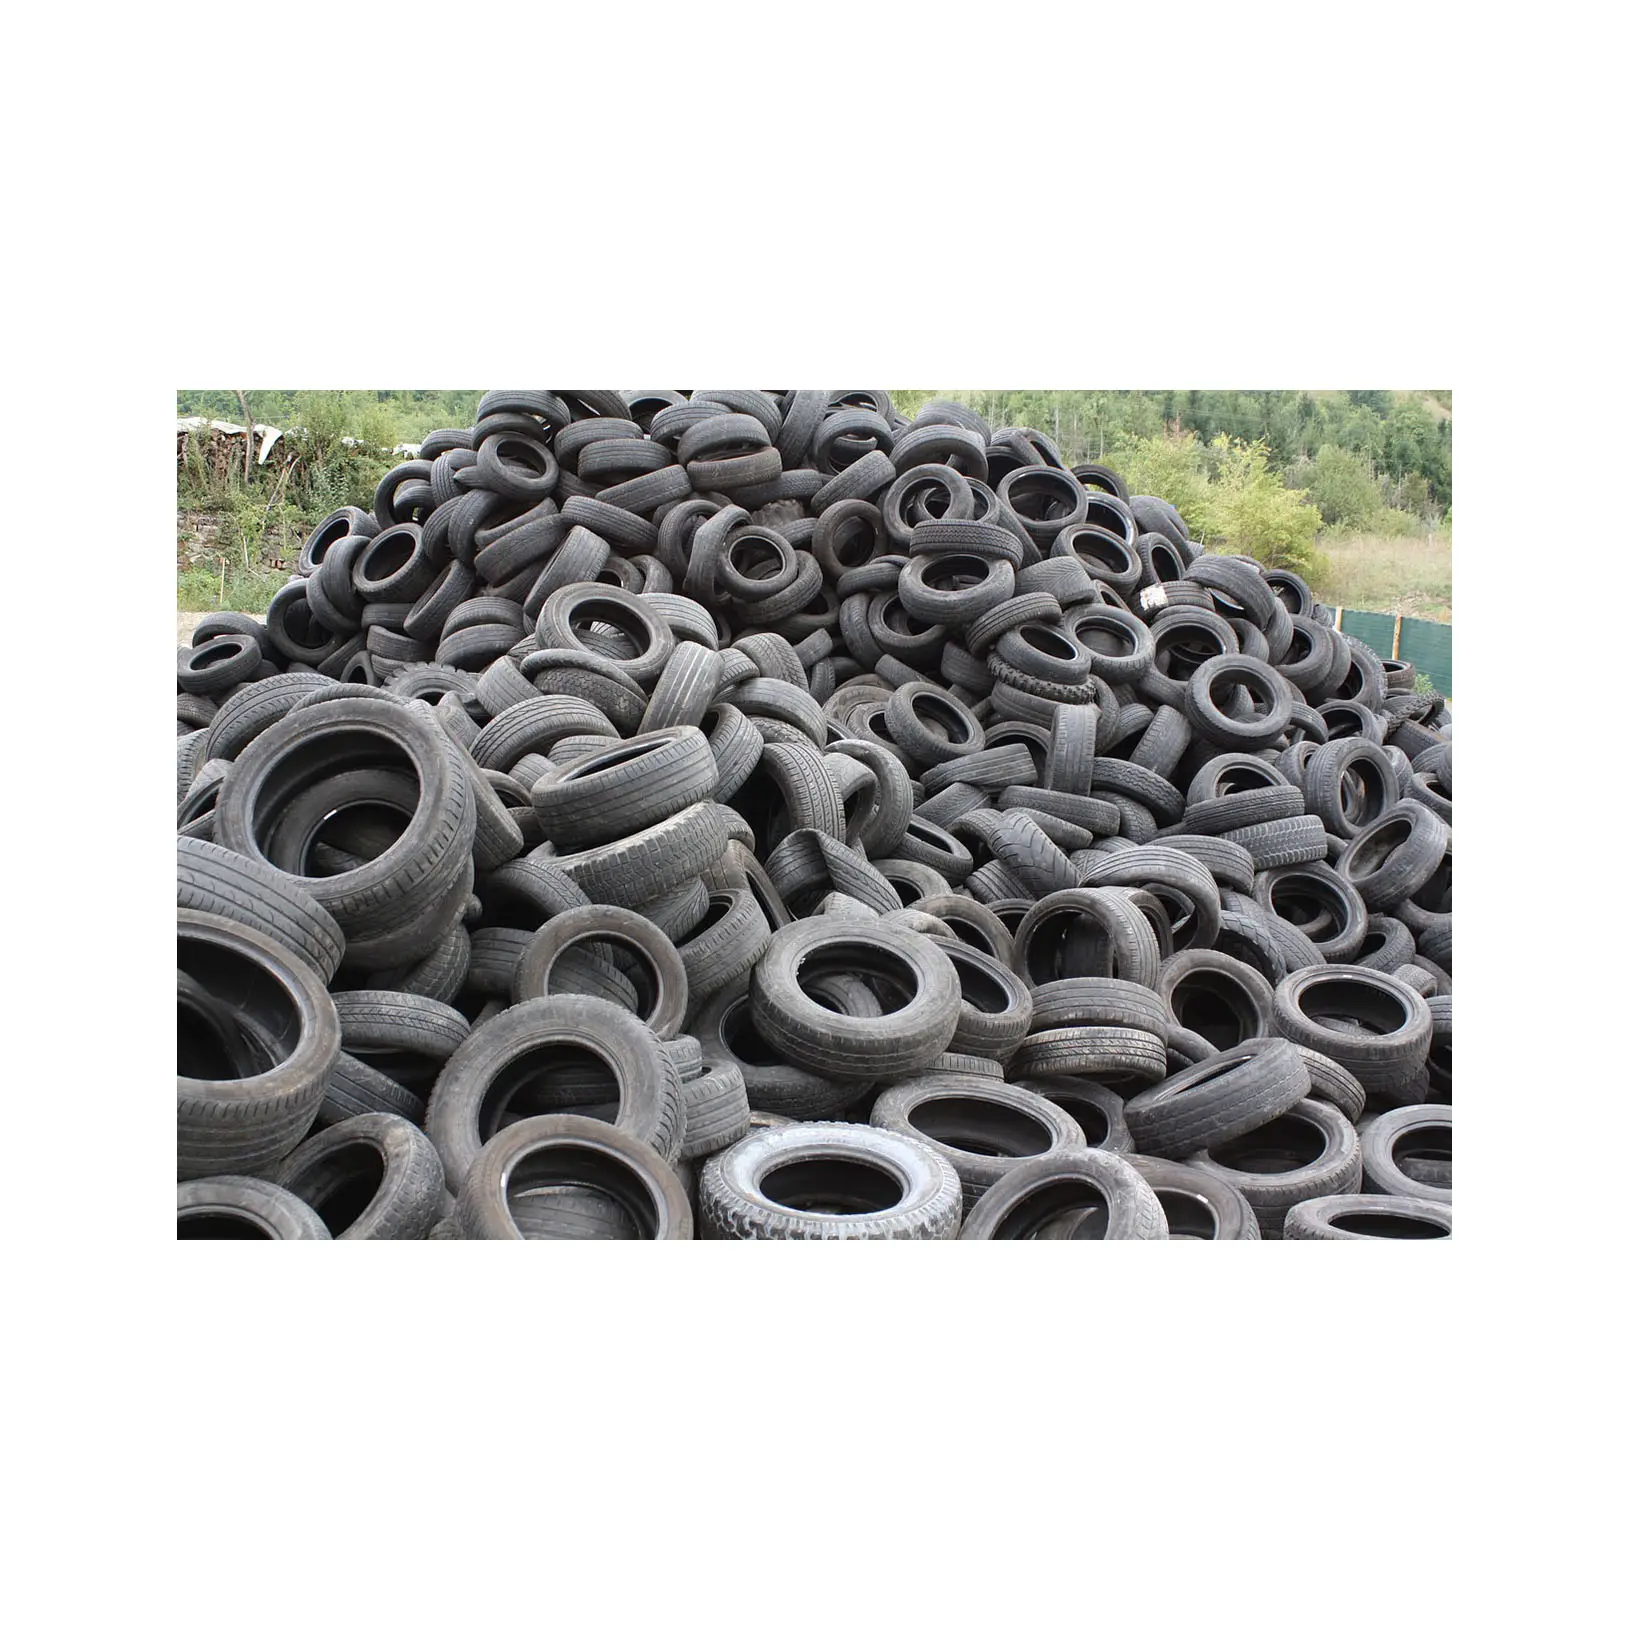 Gebrauchtkautschuk-Lkw-Reifen Turak Reifen - gebrauchte Reifen Export zum Verkauf zu niedrigem Preis